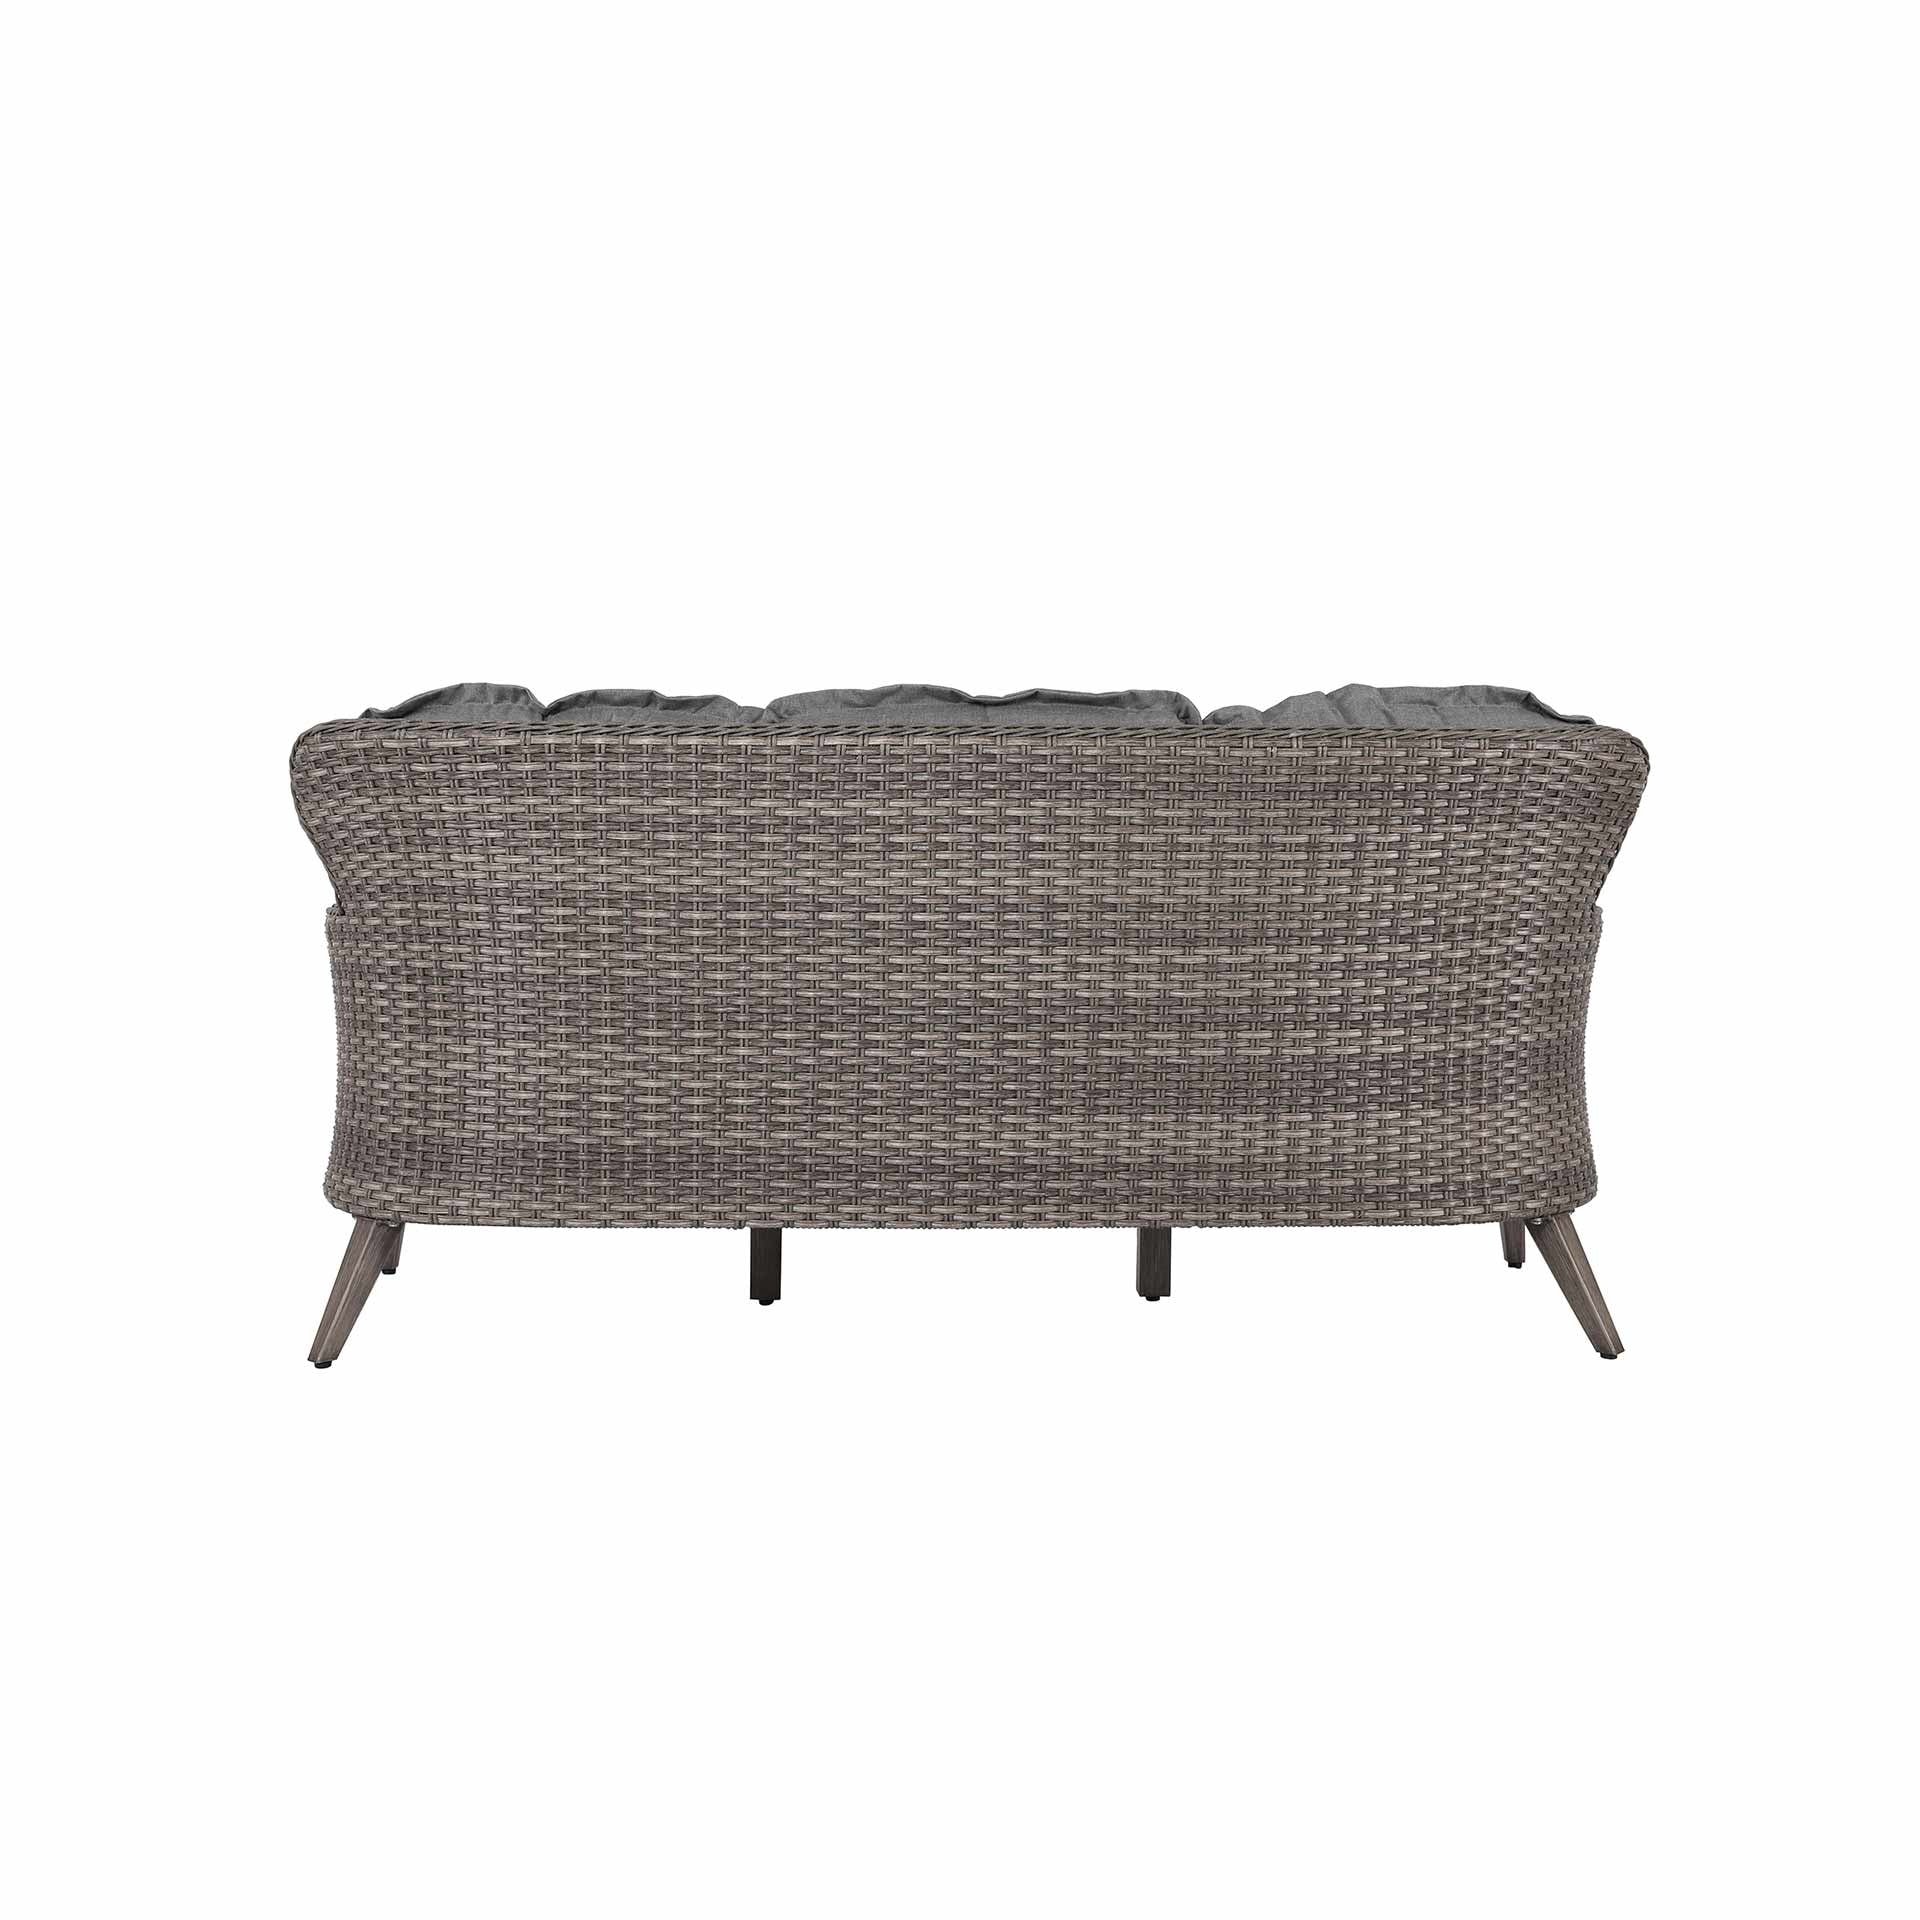 Patio Time Tenaya 4-piece Wicker Sofa Set